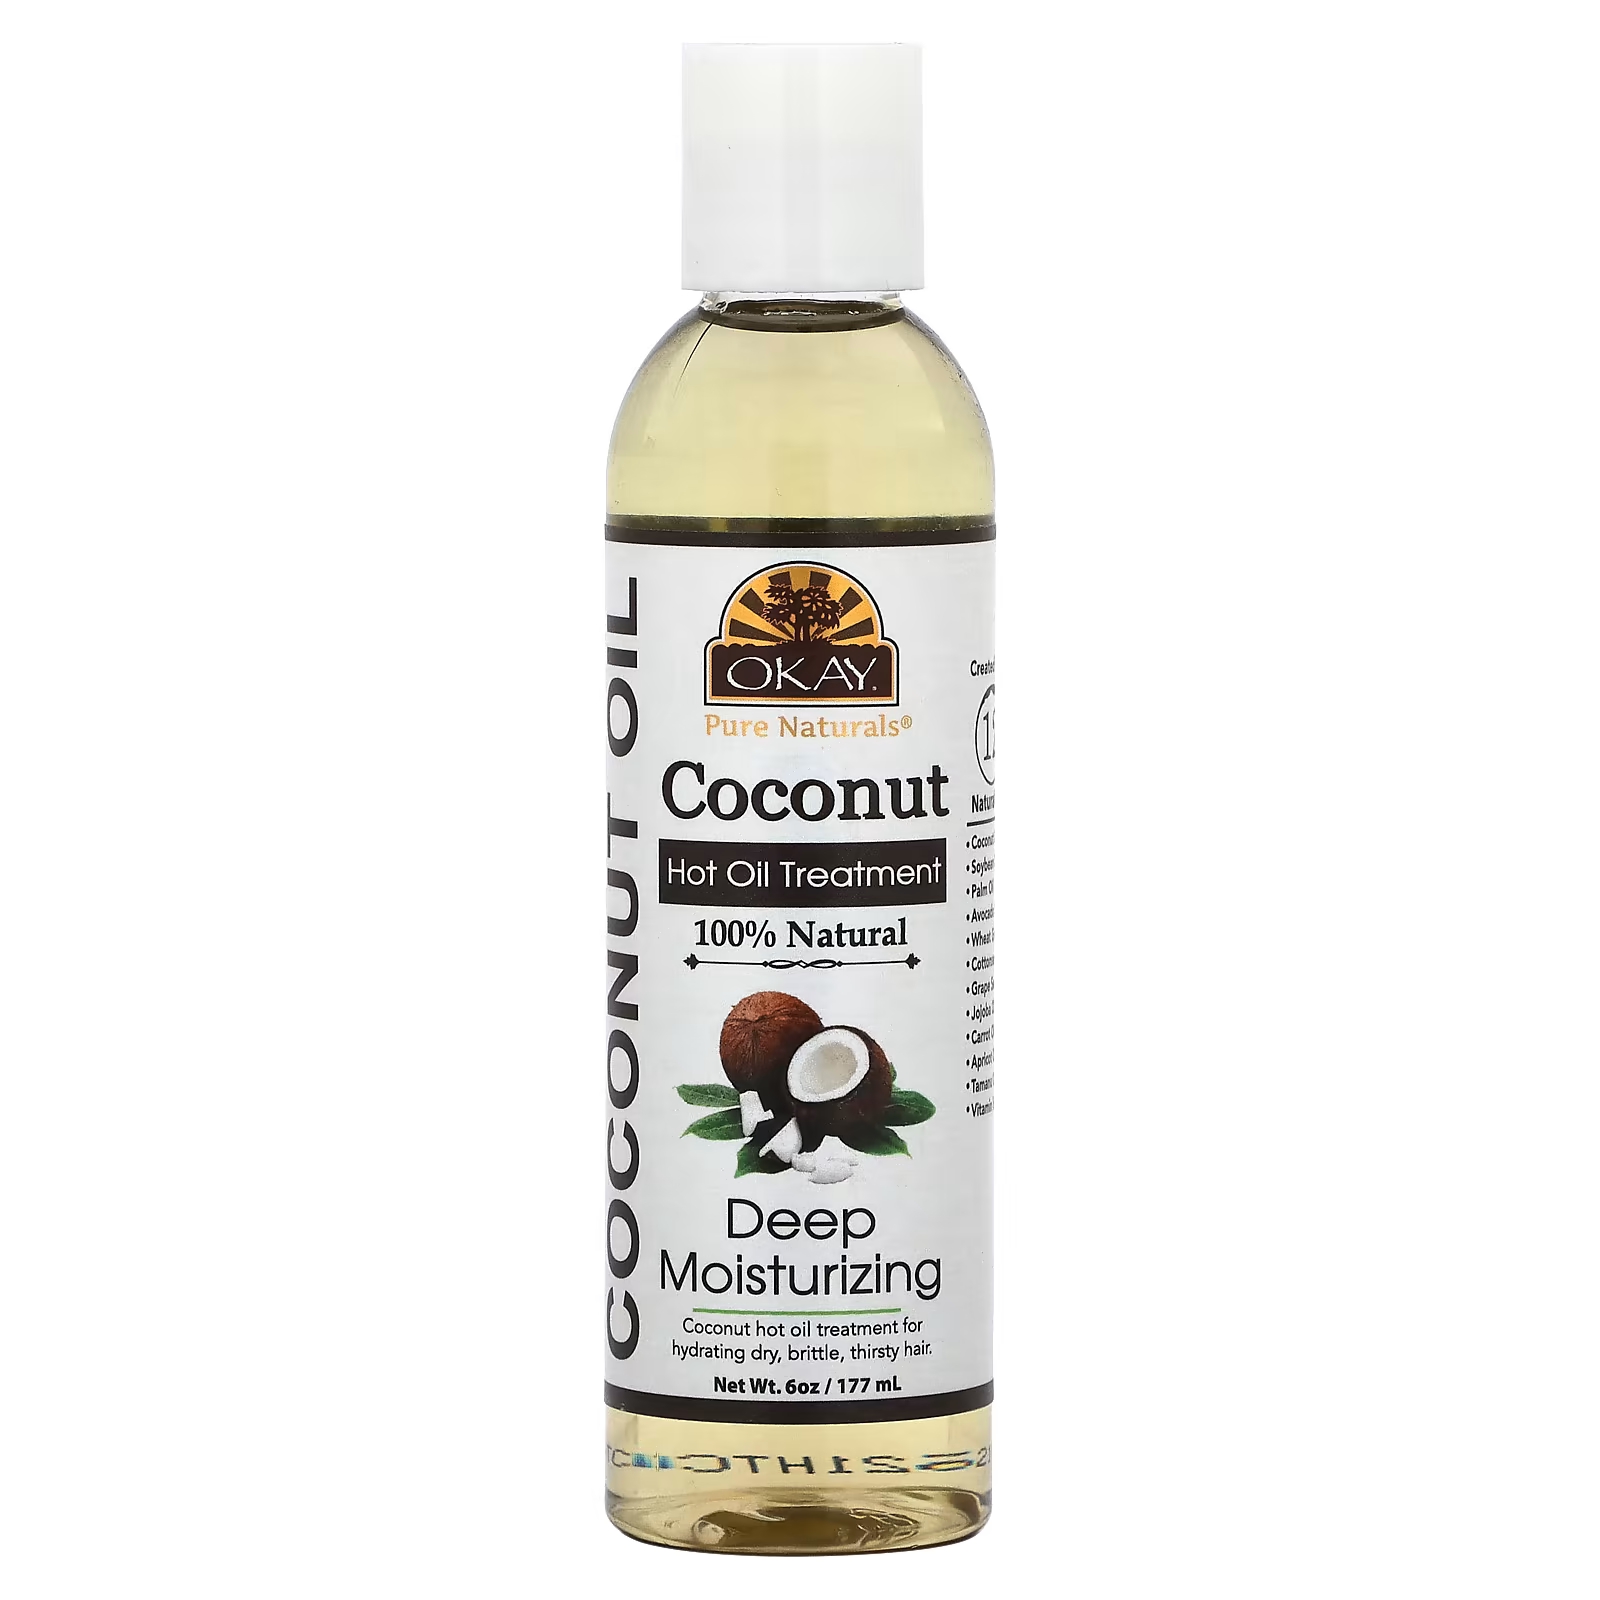 Уход Okay Pure Naturals Coconut Hot Oil Treatment глубоко увлажняющее, 177 мл цена и фото